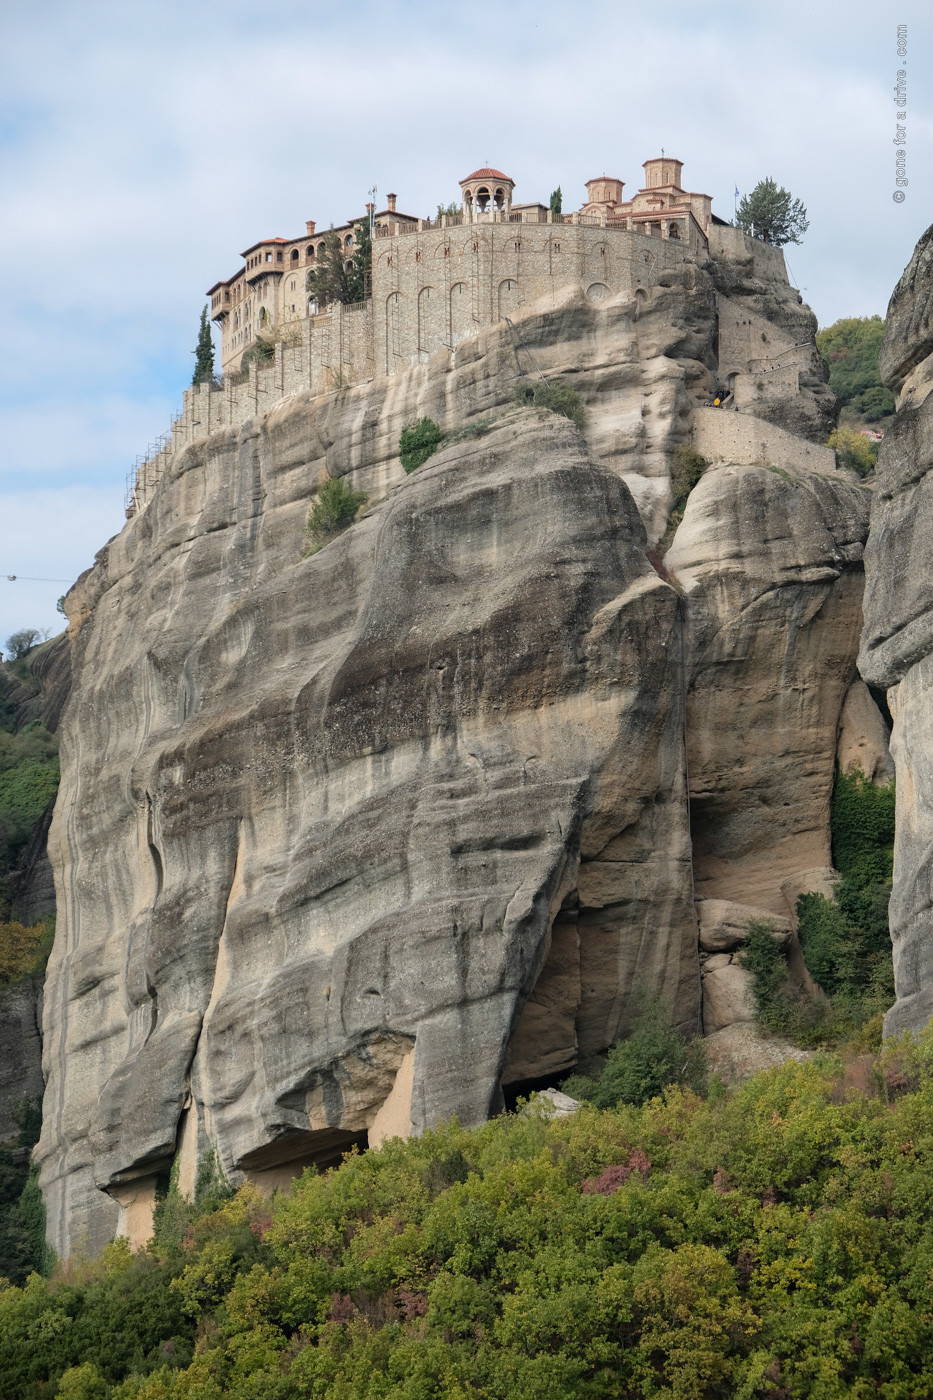 Kloster auf Felszinne in Meteora, Griechenland.